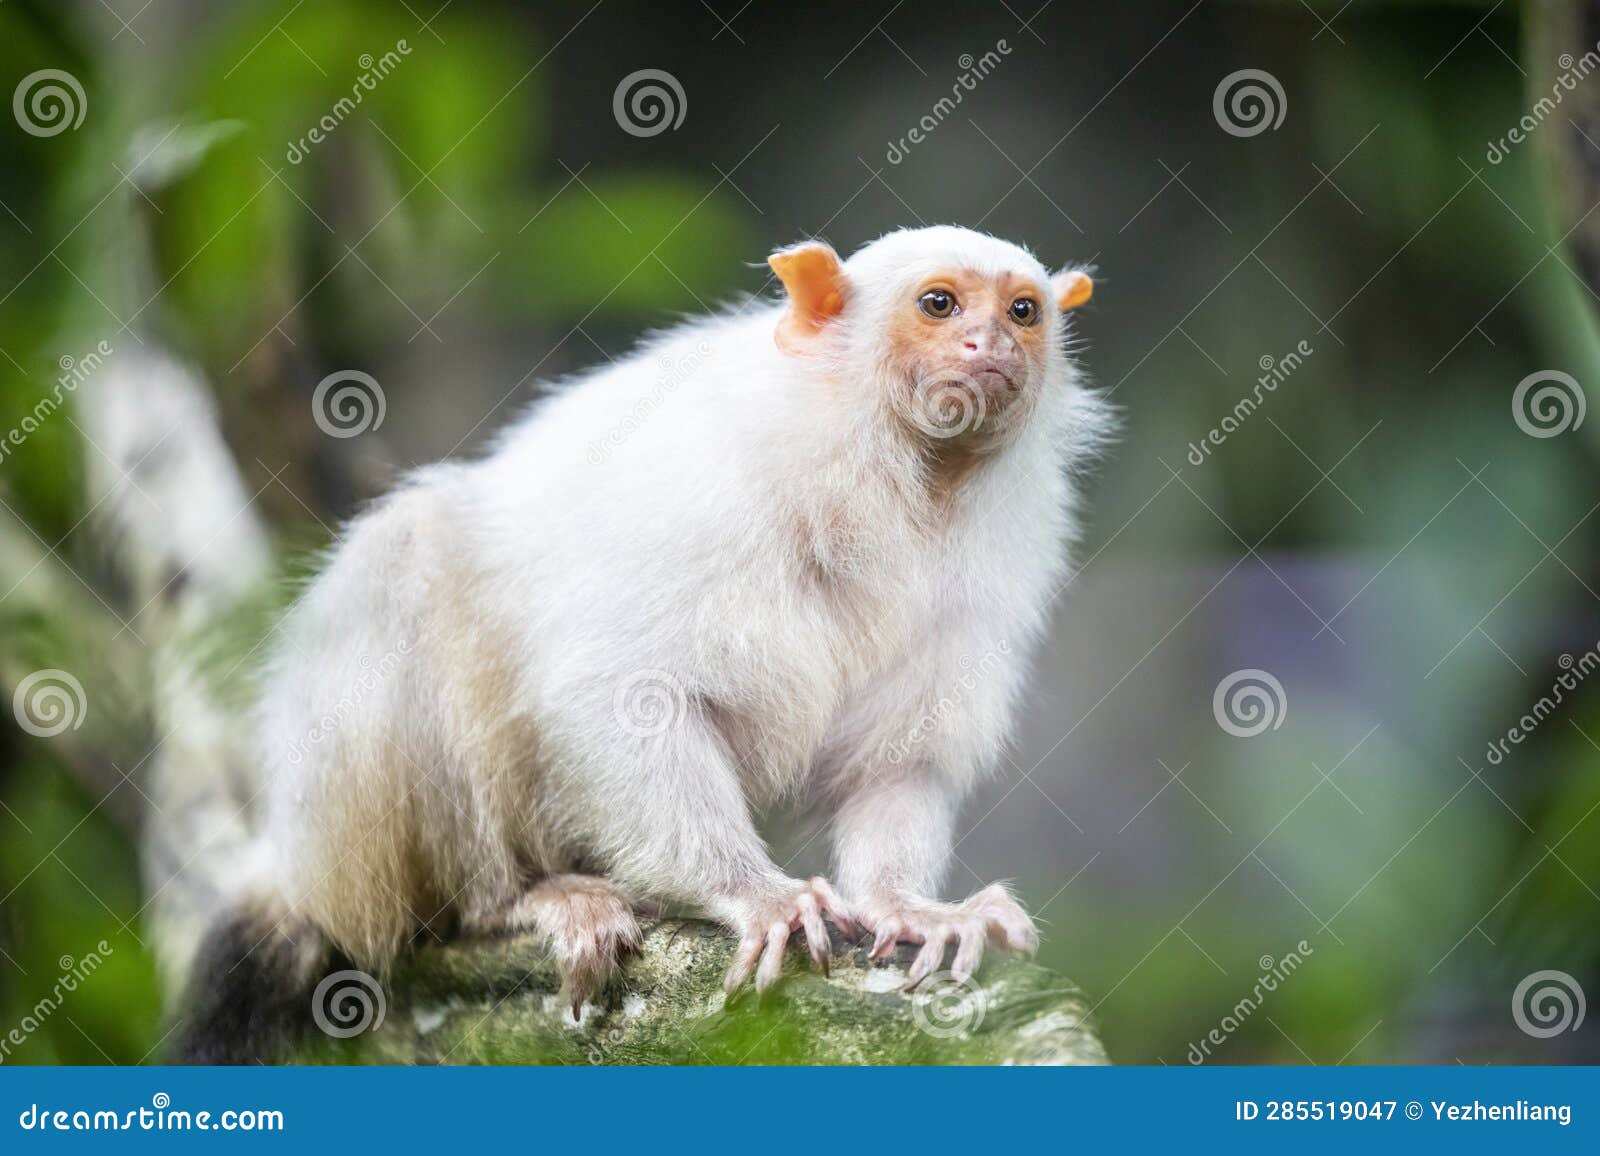 the silvery marmoset (mico argentatus)